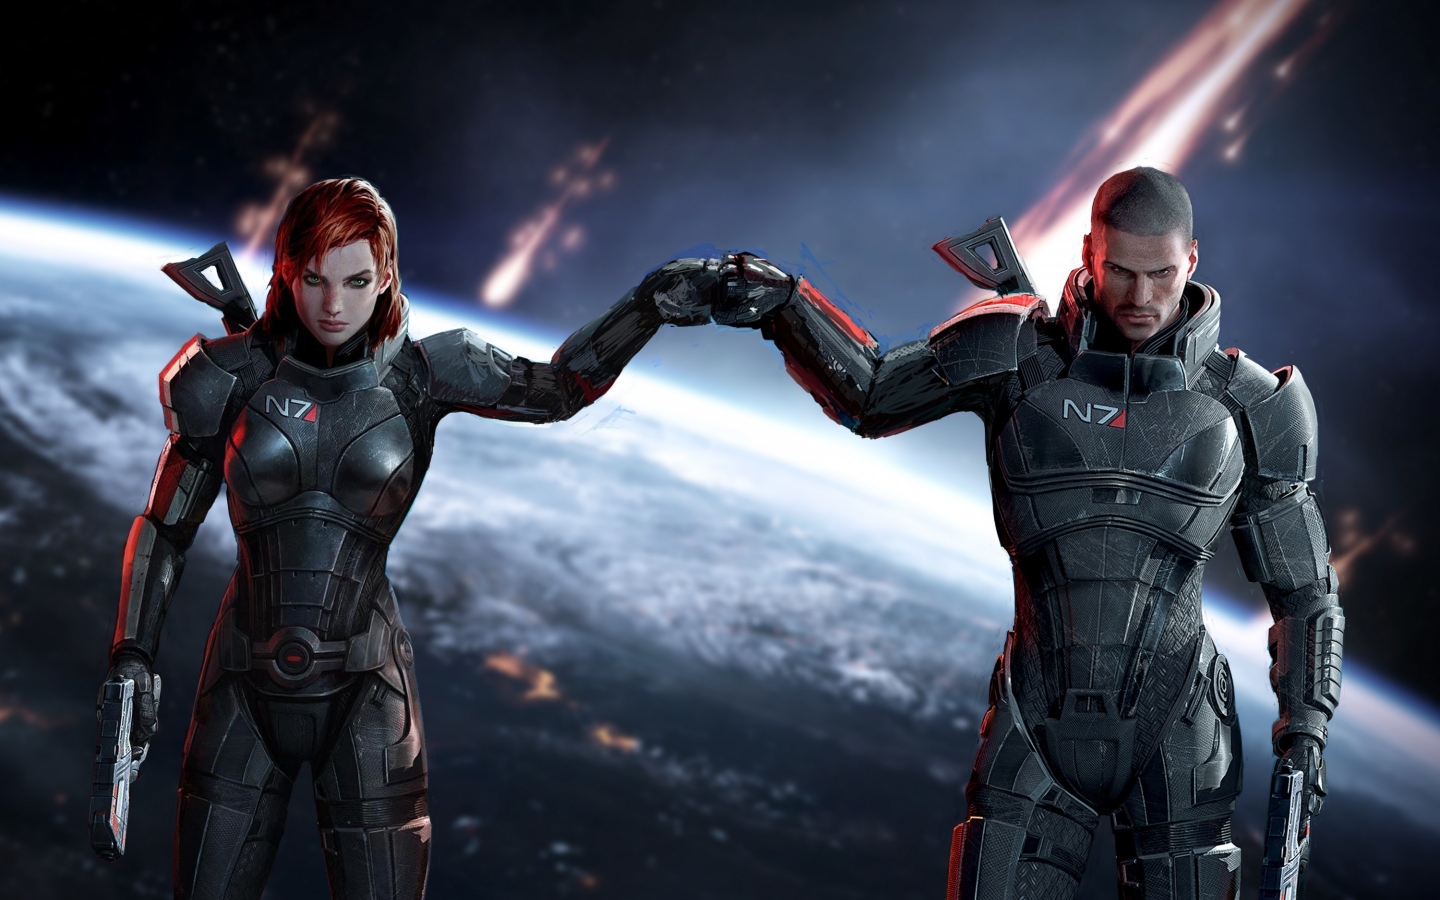 Mass Effect Jane and John Shepard for 1440 x 900 widescreen resolution